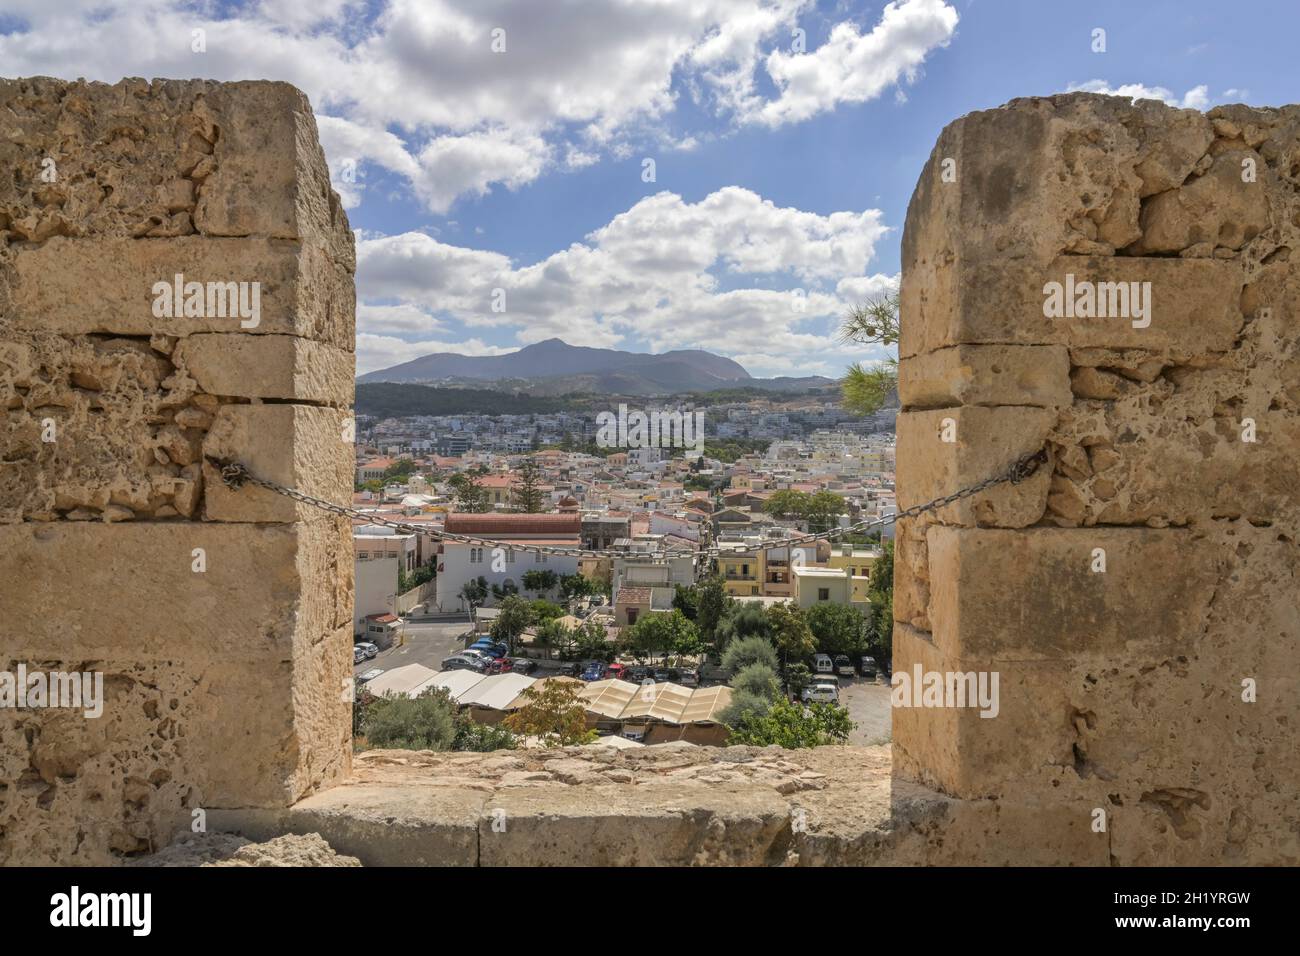 Festungsmauer, Fortezza, Rethymno, Kreta, Griechenland Foto Stock